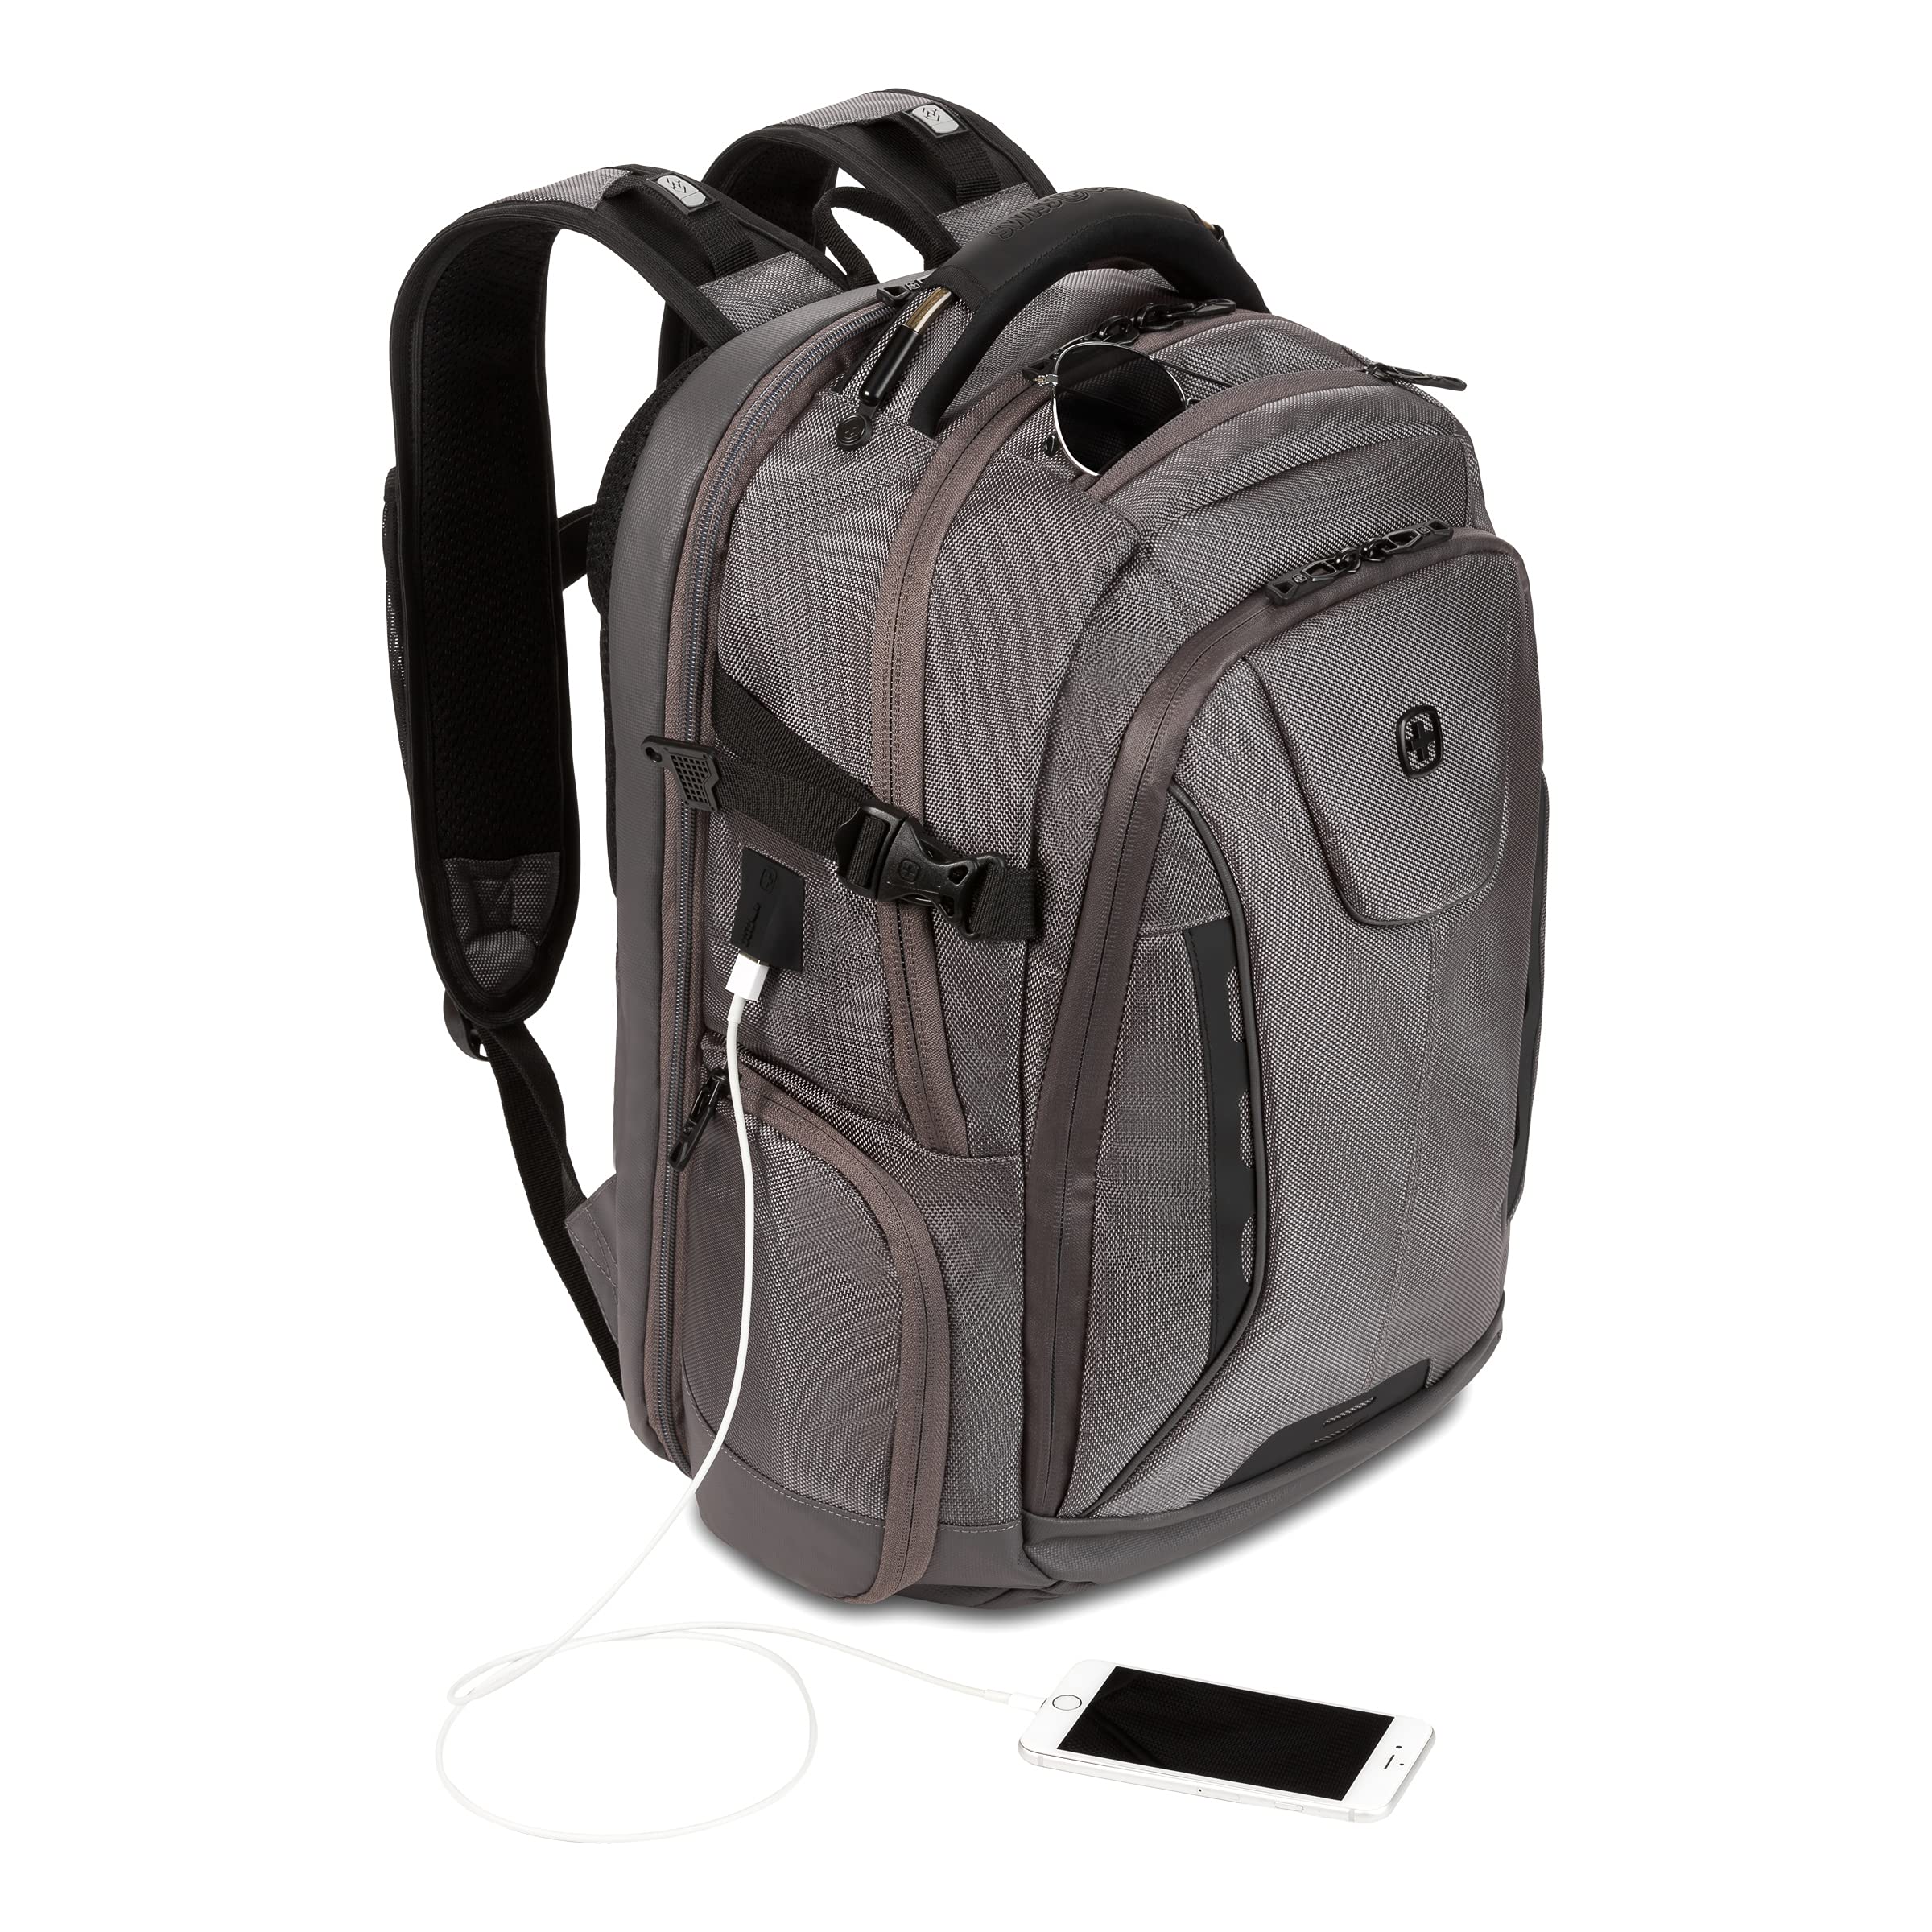 SwissGear ScanSmart Laptop Bag, Gray Ballistic, Fits 15-Inch Notebook